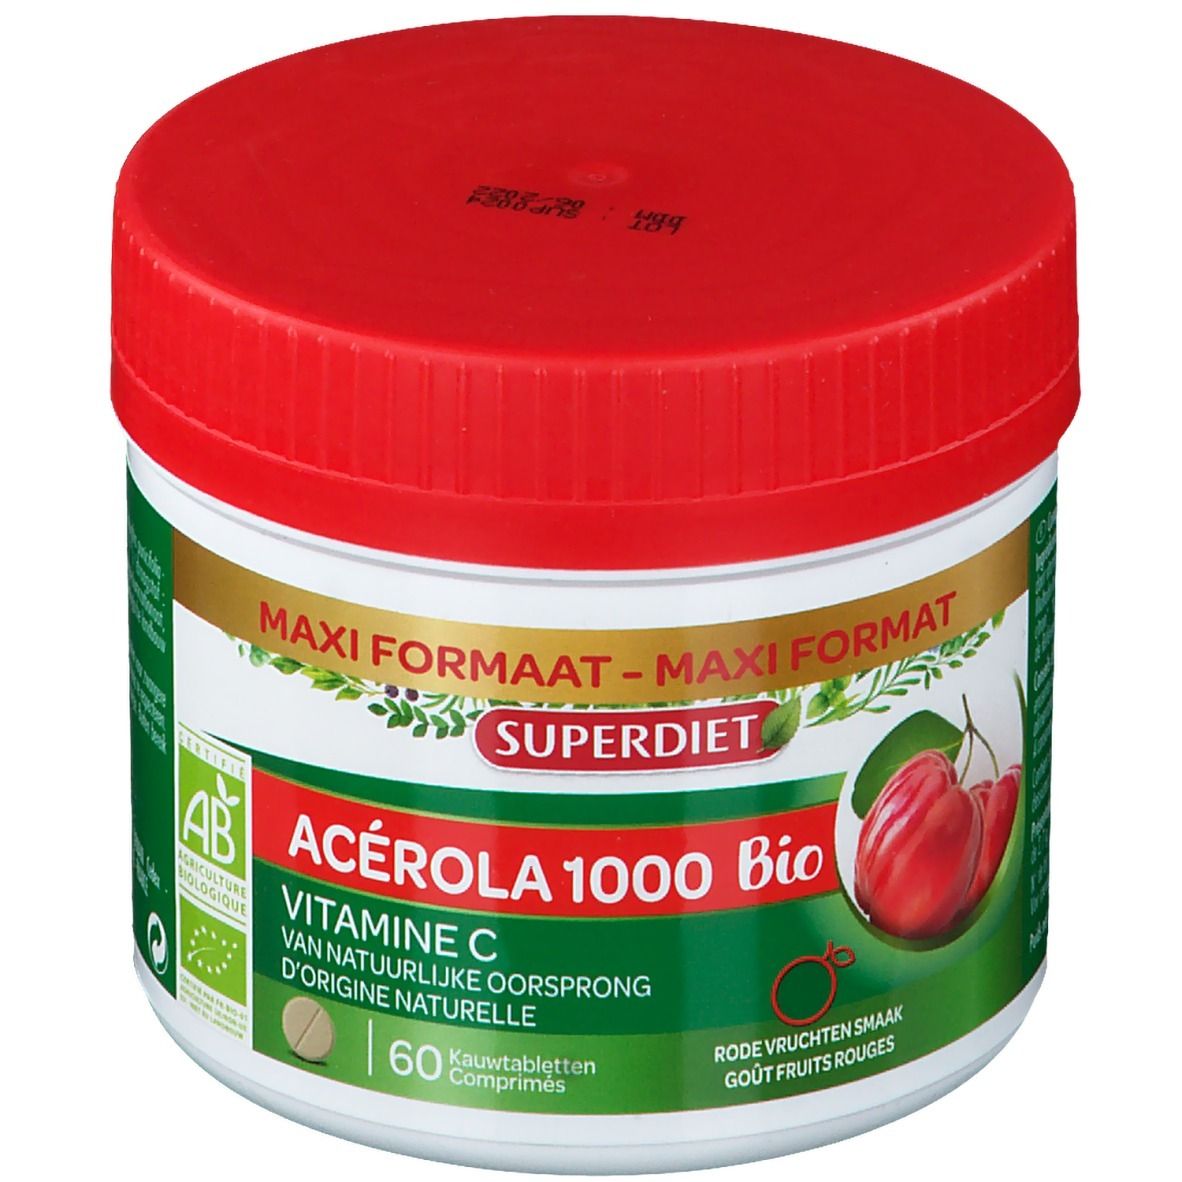 SUPERDIET Acerola 1000 Bio